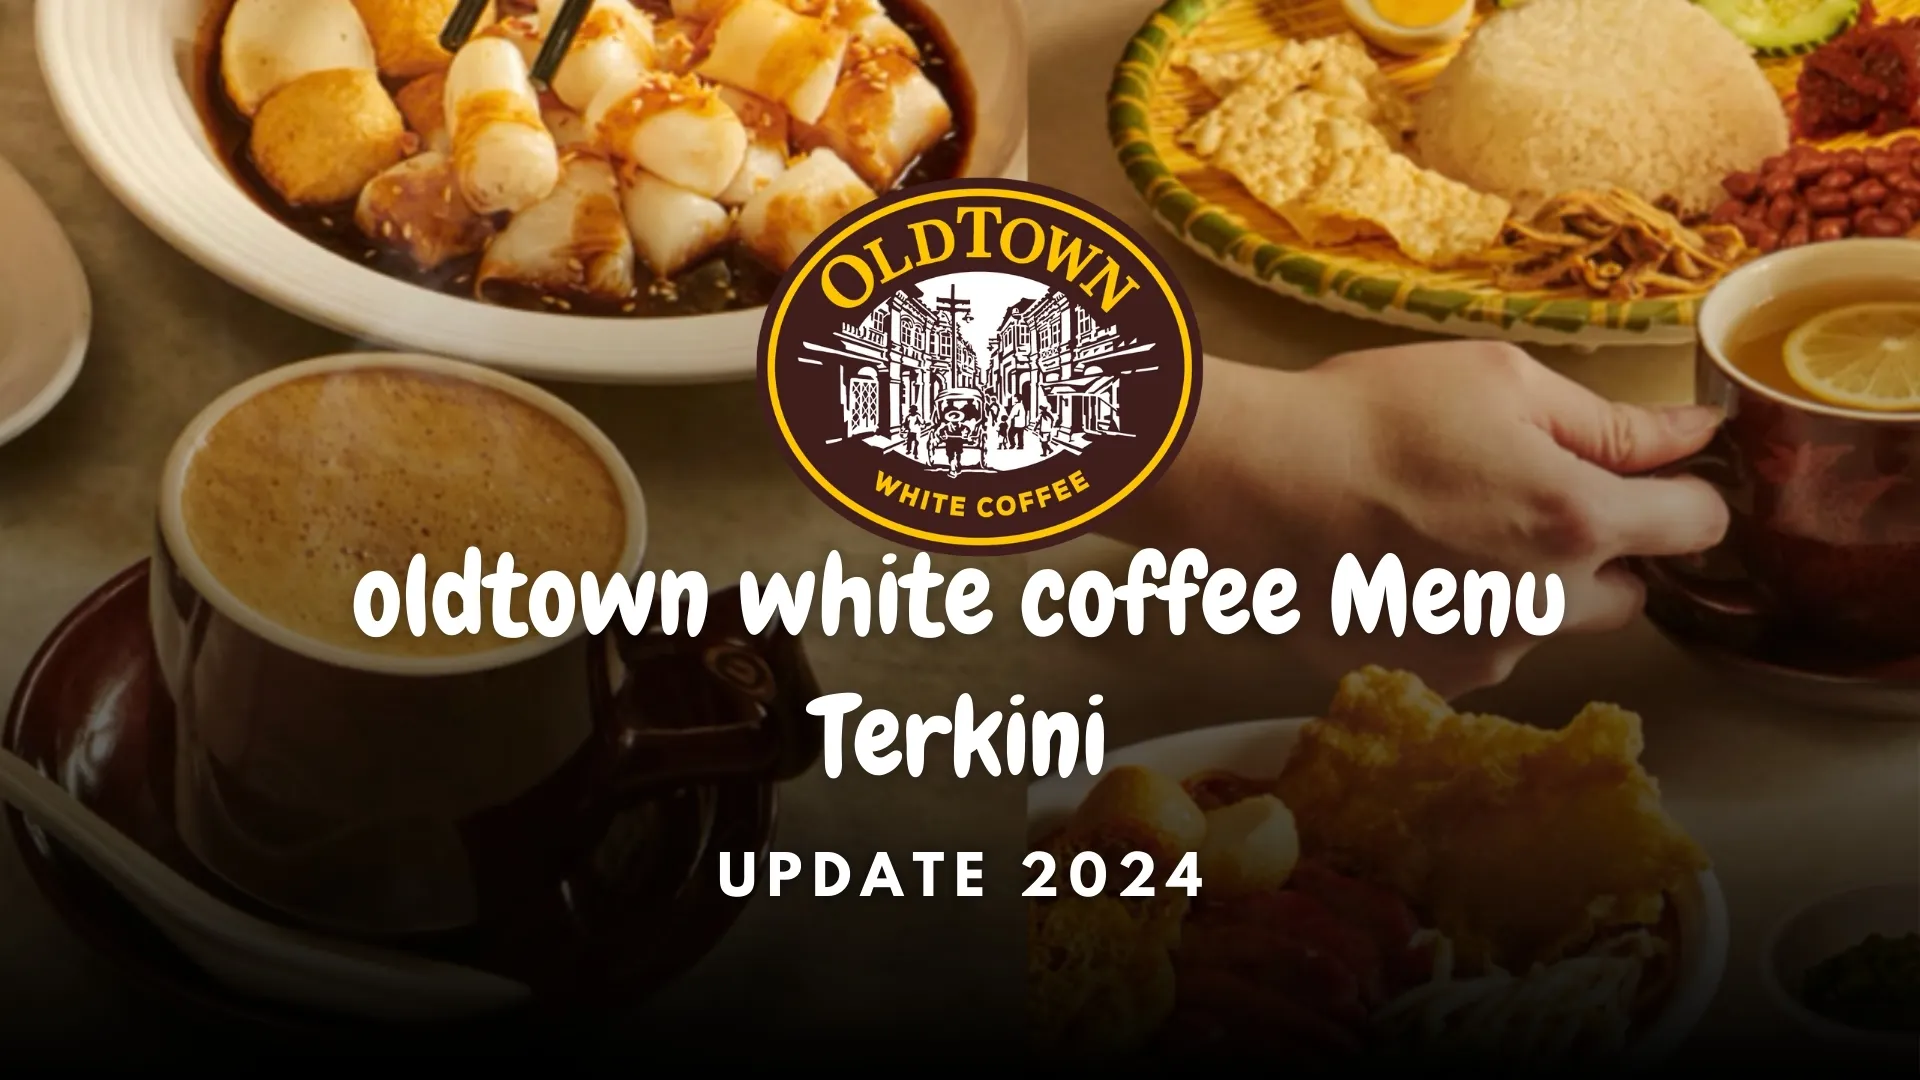 oldtown white coffee menu terkini 2024